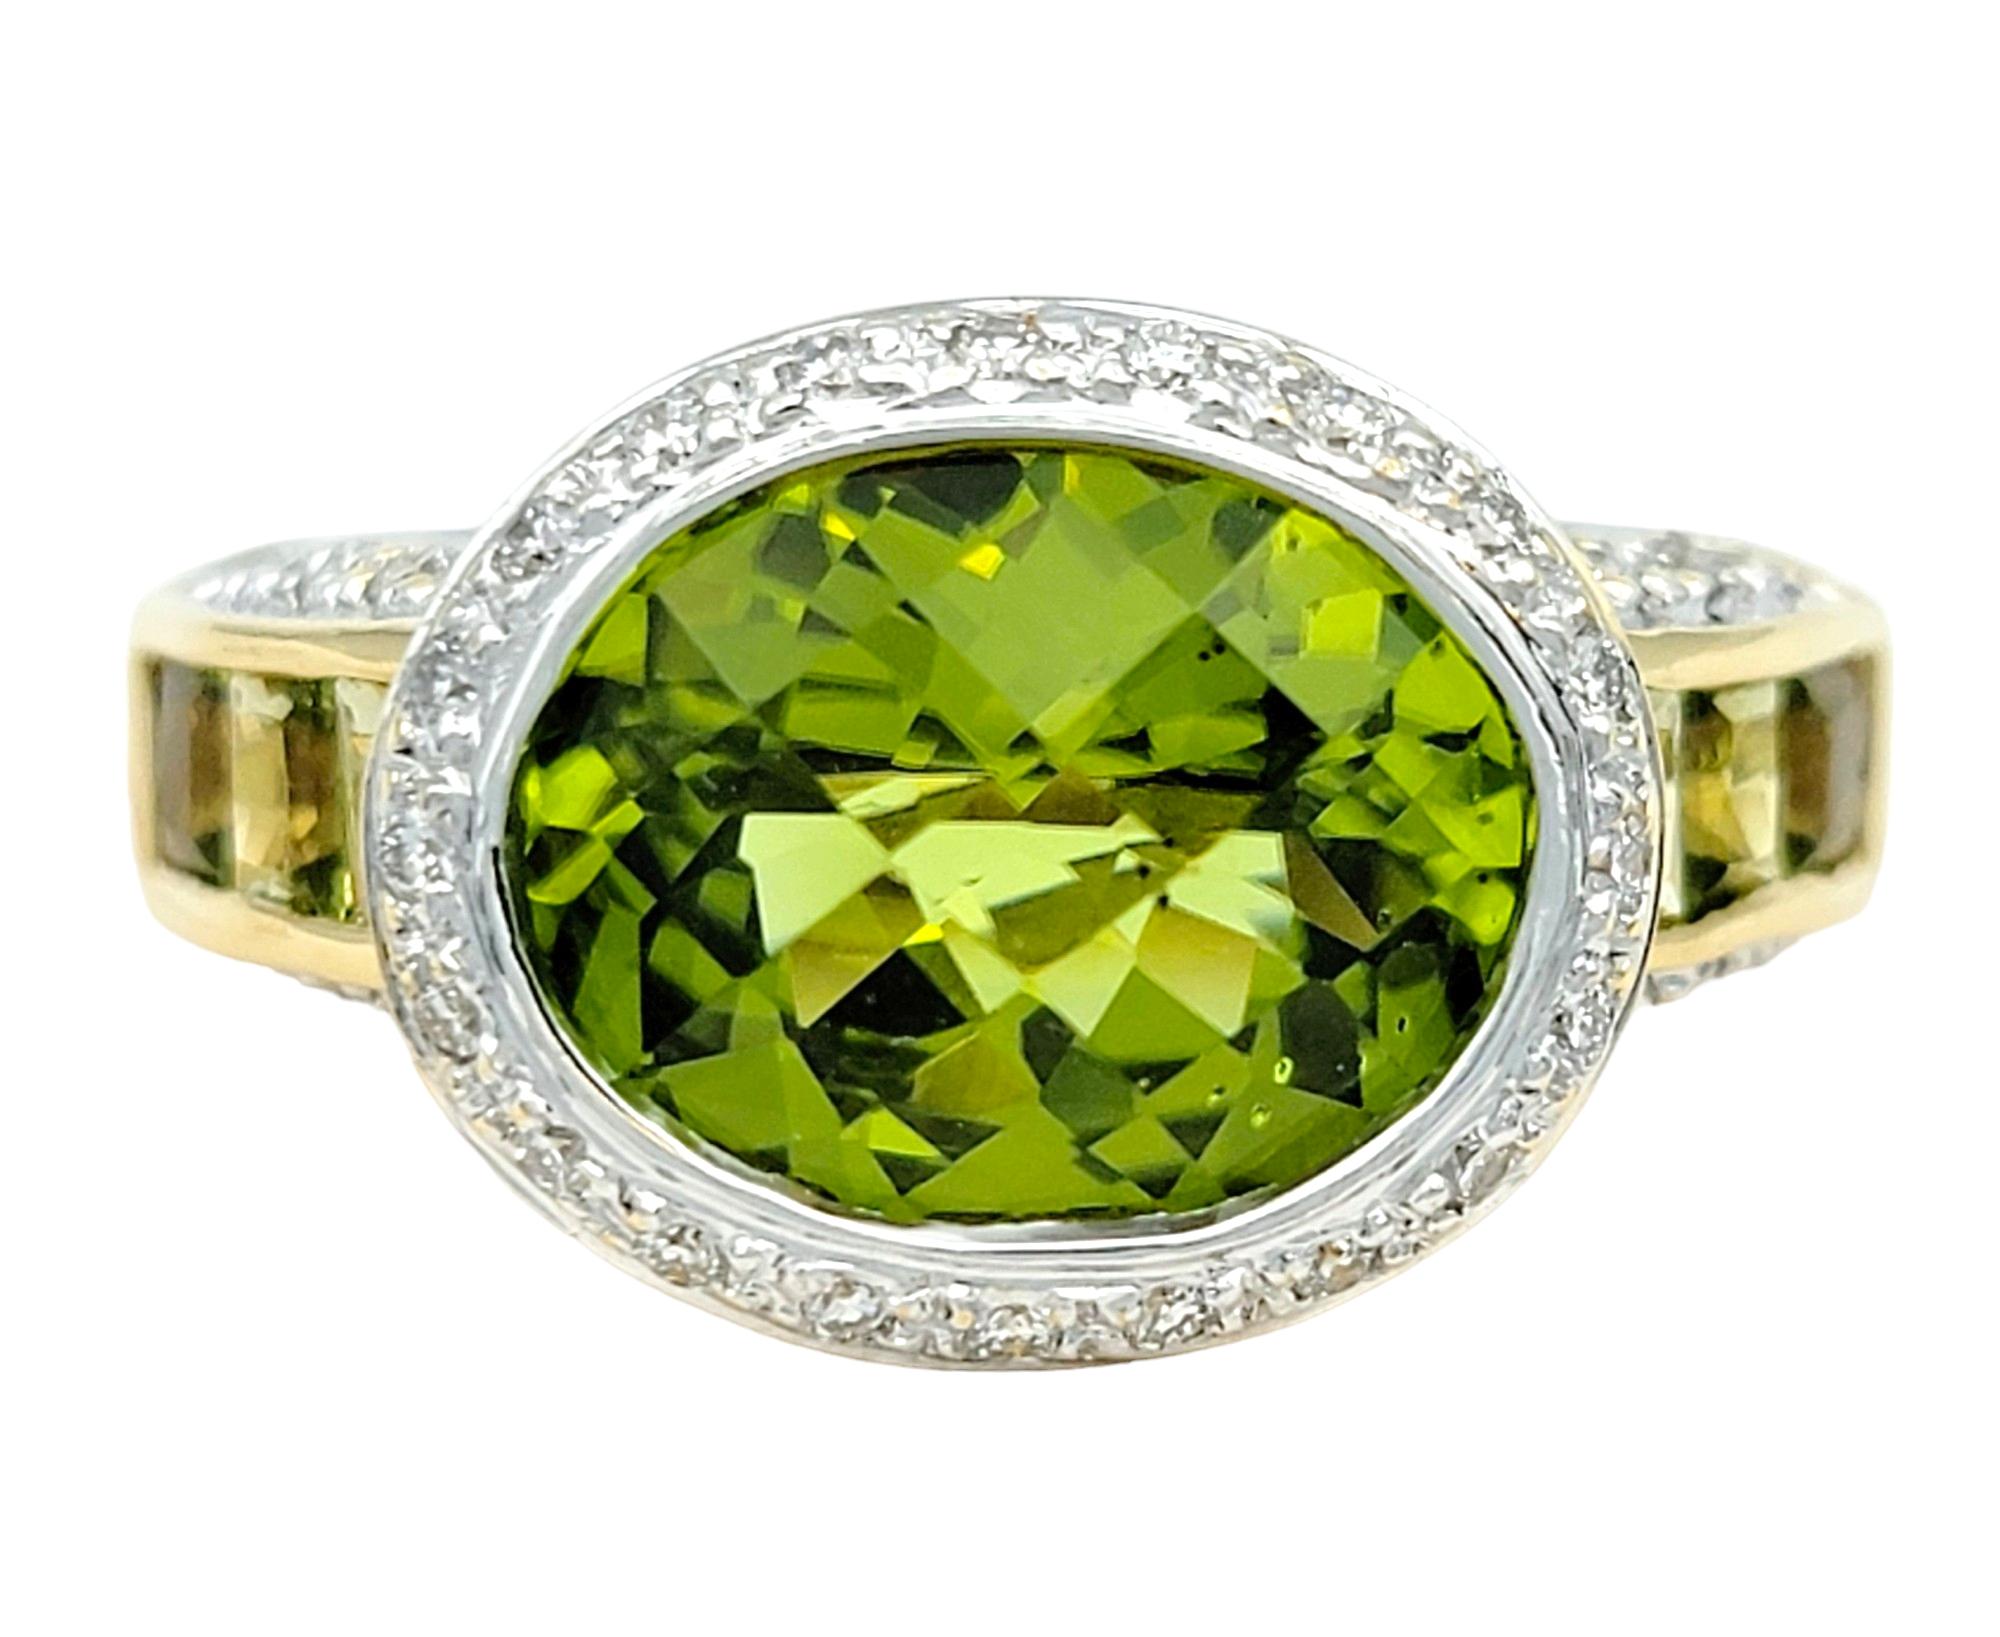 Ringgröße: 7

Dieser atemberaubende Bellarri Ring mit Peridot und Diamanten, gefasst in glänzendem 18-karätigem Gelbgold, ist ein faszinierendes Schmuckstück, das die Essenz von Eleganz und Raffinesse verkörpert. Das Herzstück des Rings ist ein